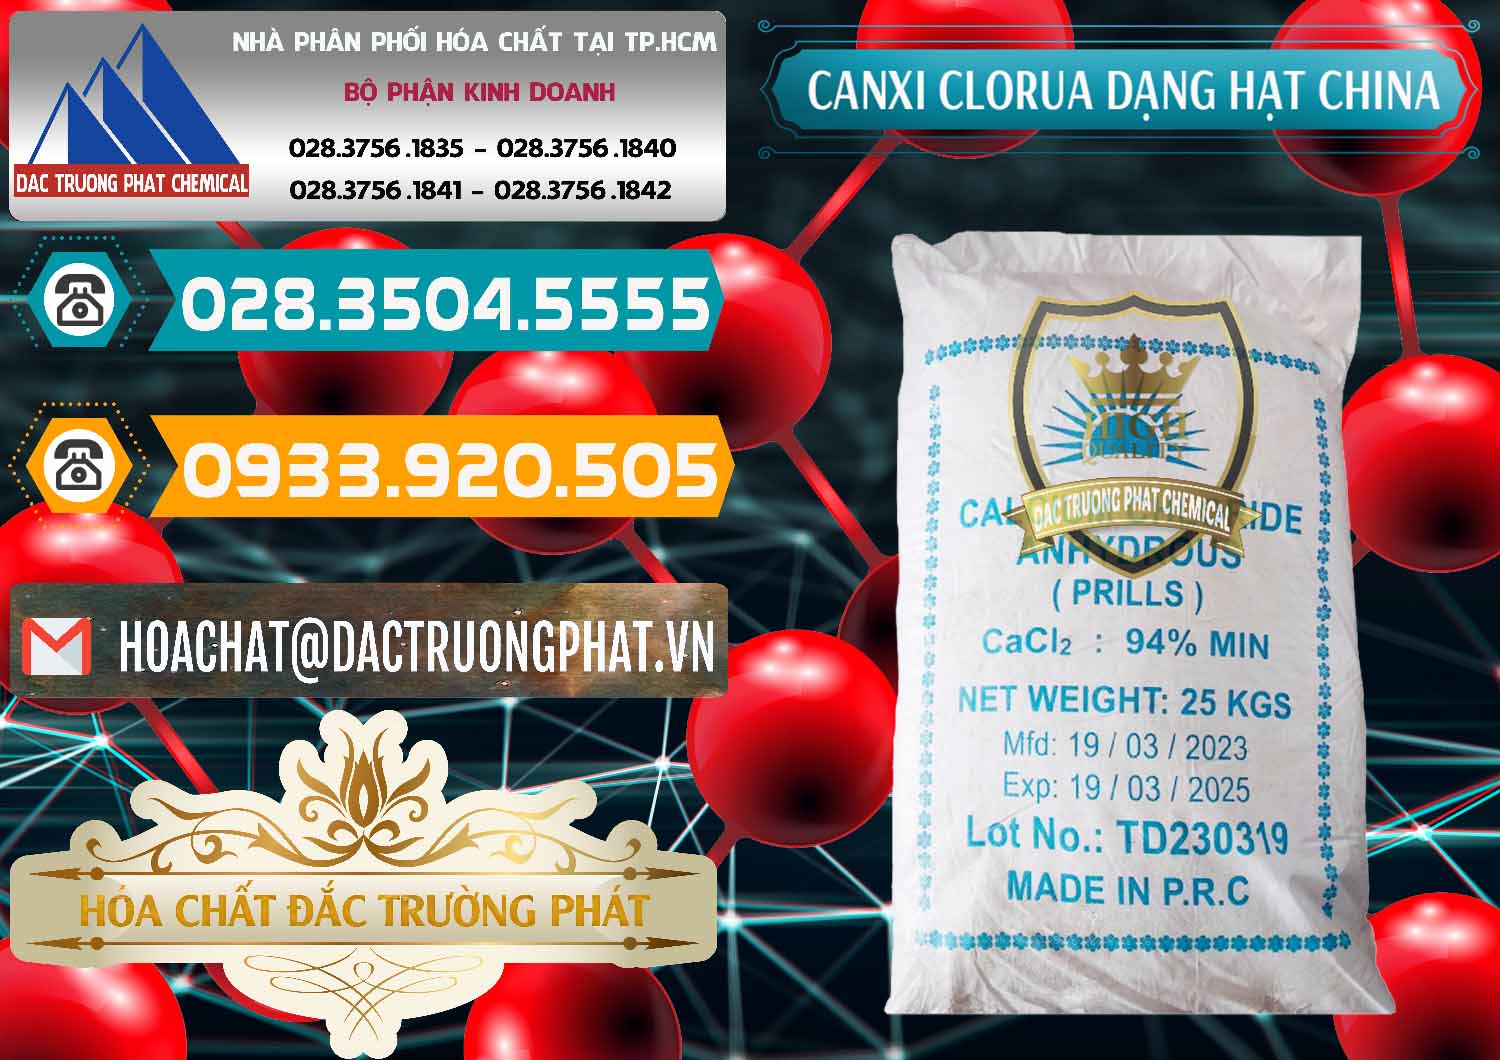 Cty chuyên kinh doanh _ bán CaCl2 – Canxi Clorua 94% Dạng Hạt Trung Quốc China - 0373 - Nhà cung cấp và phân phối hóa chất tại TP.HCM - congtyhoachat.vn